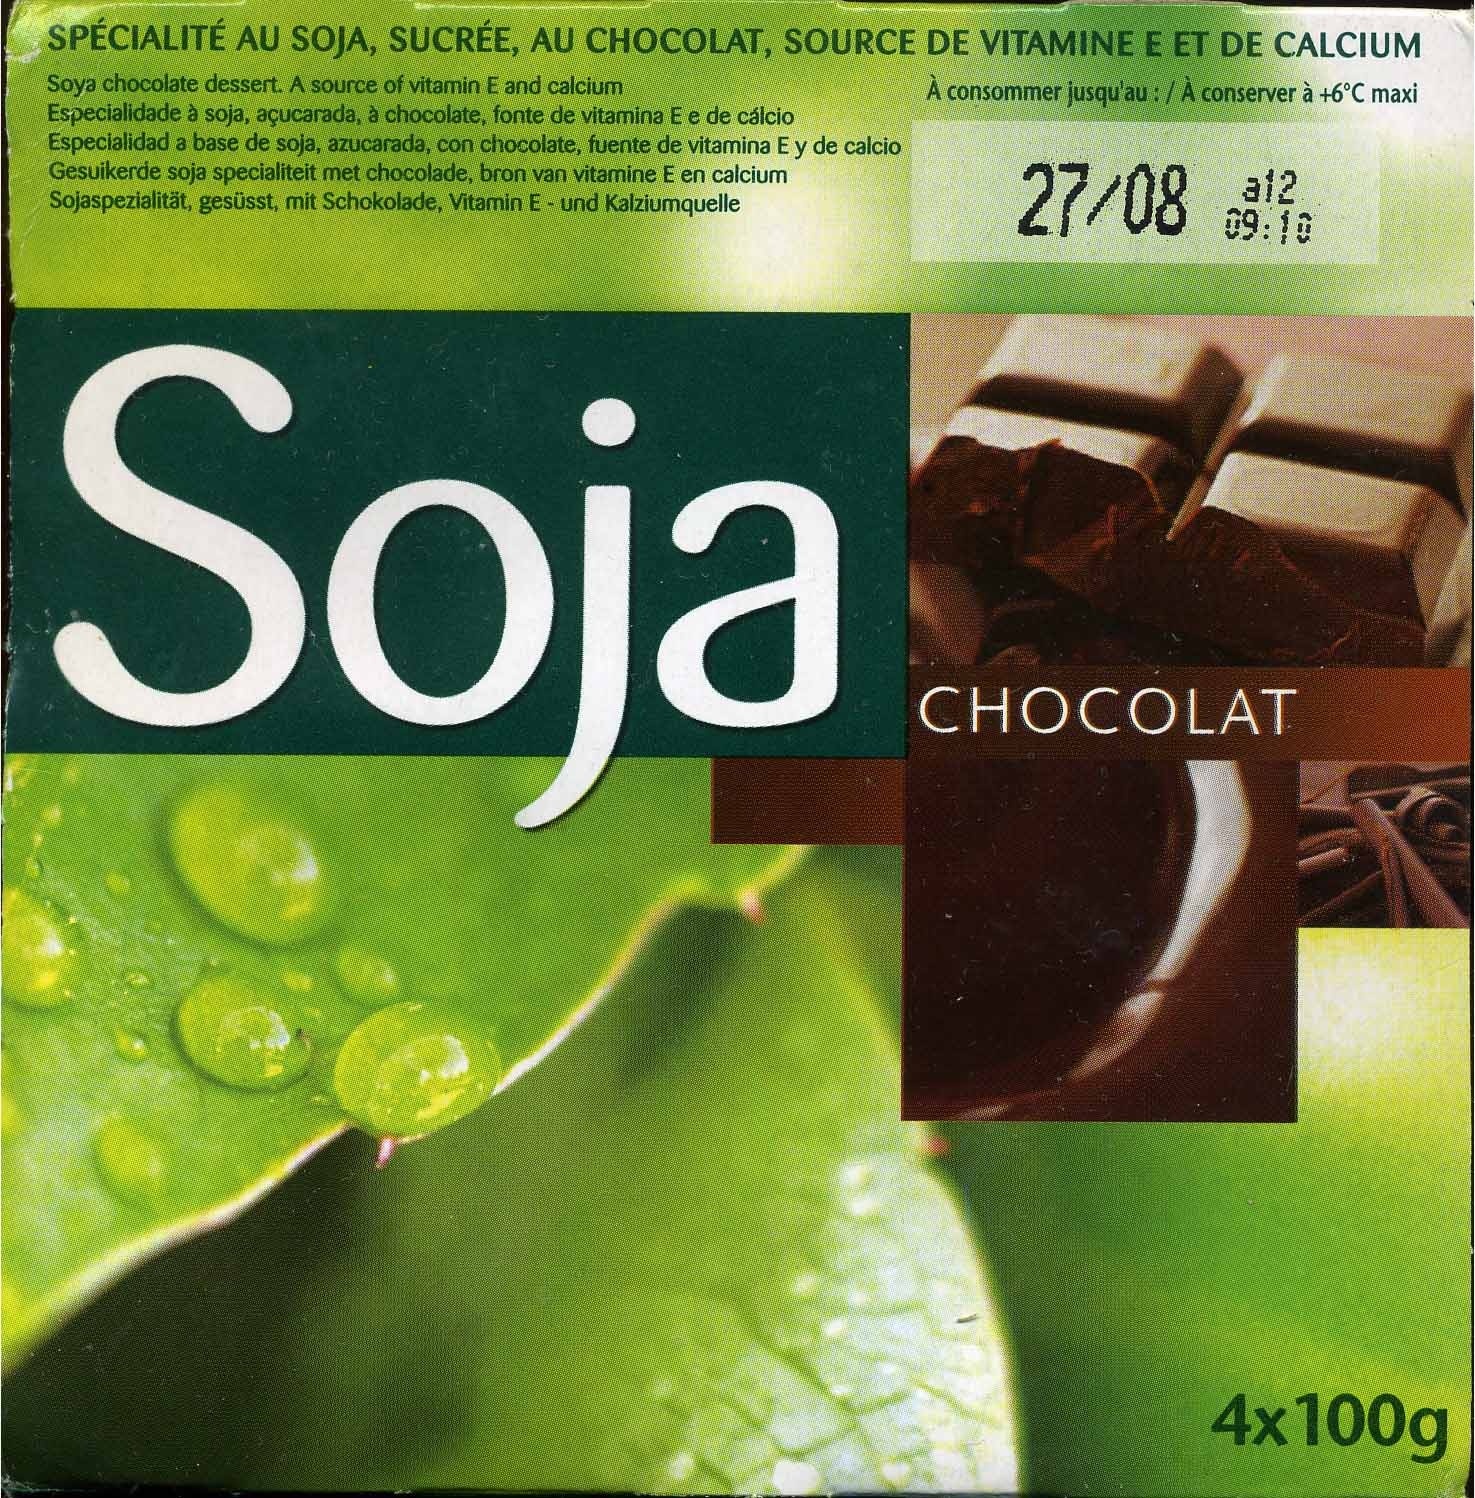 Soja chocolat - Produktua - es